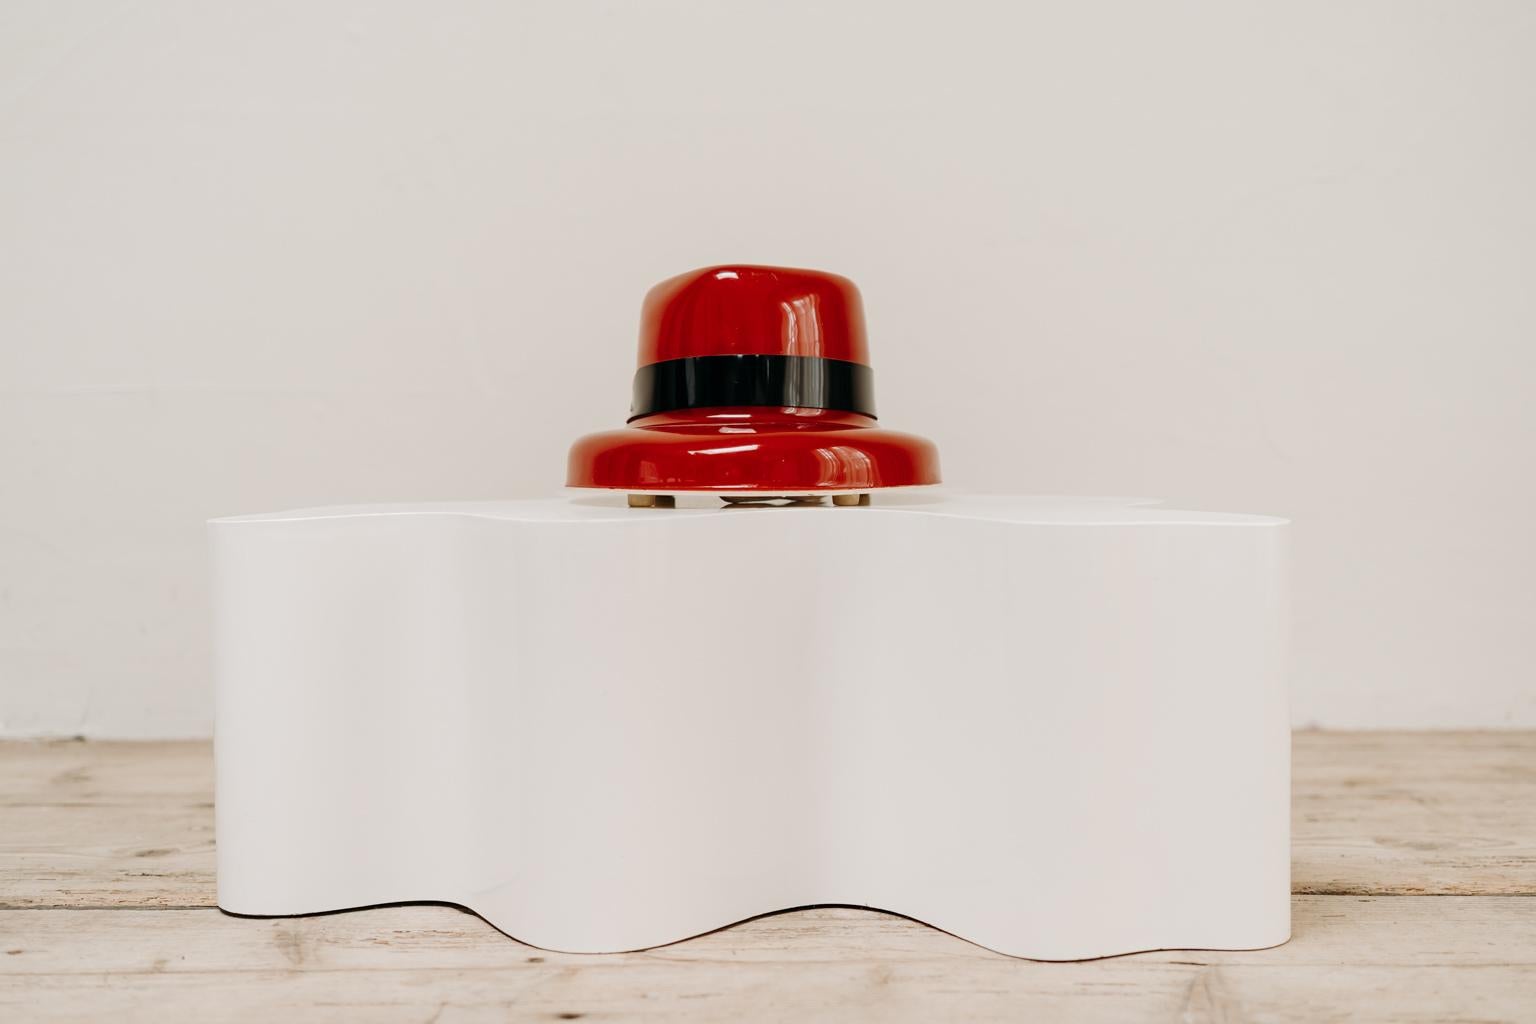 Skurriles Objekt diese rote Hutlampe, hergestellt und gestempelt von TIF Schweiz, in gutem Vintage-Zustand